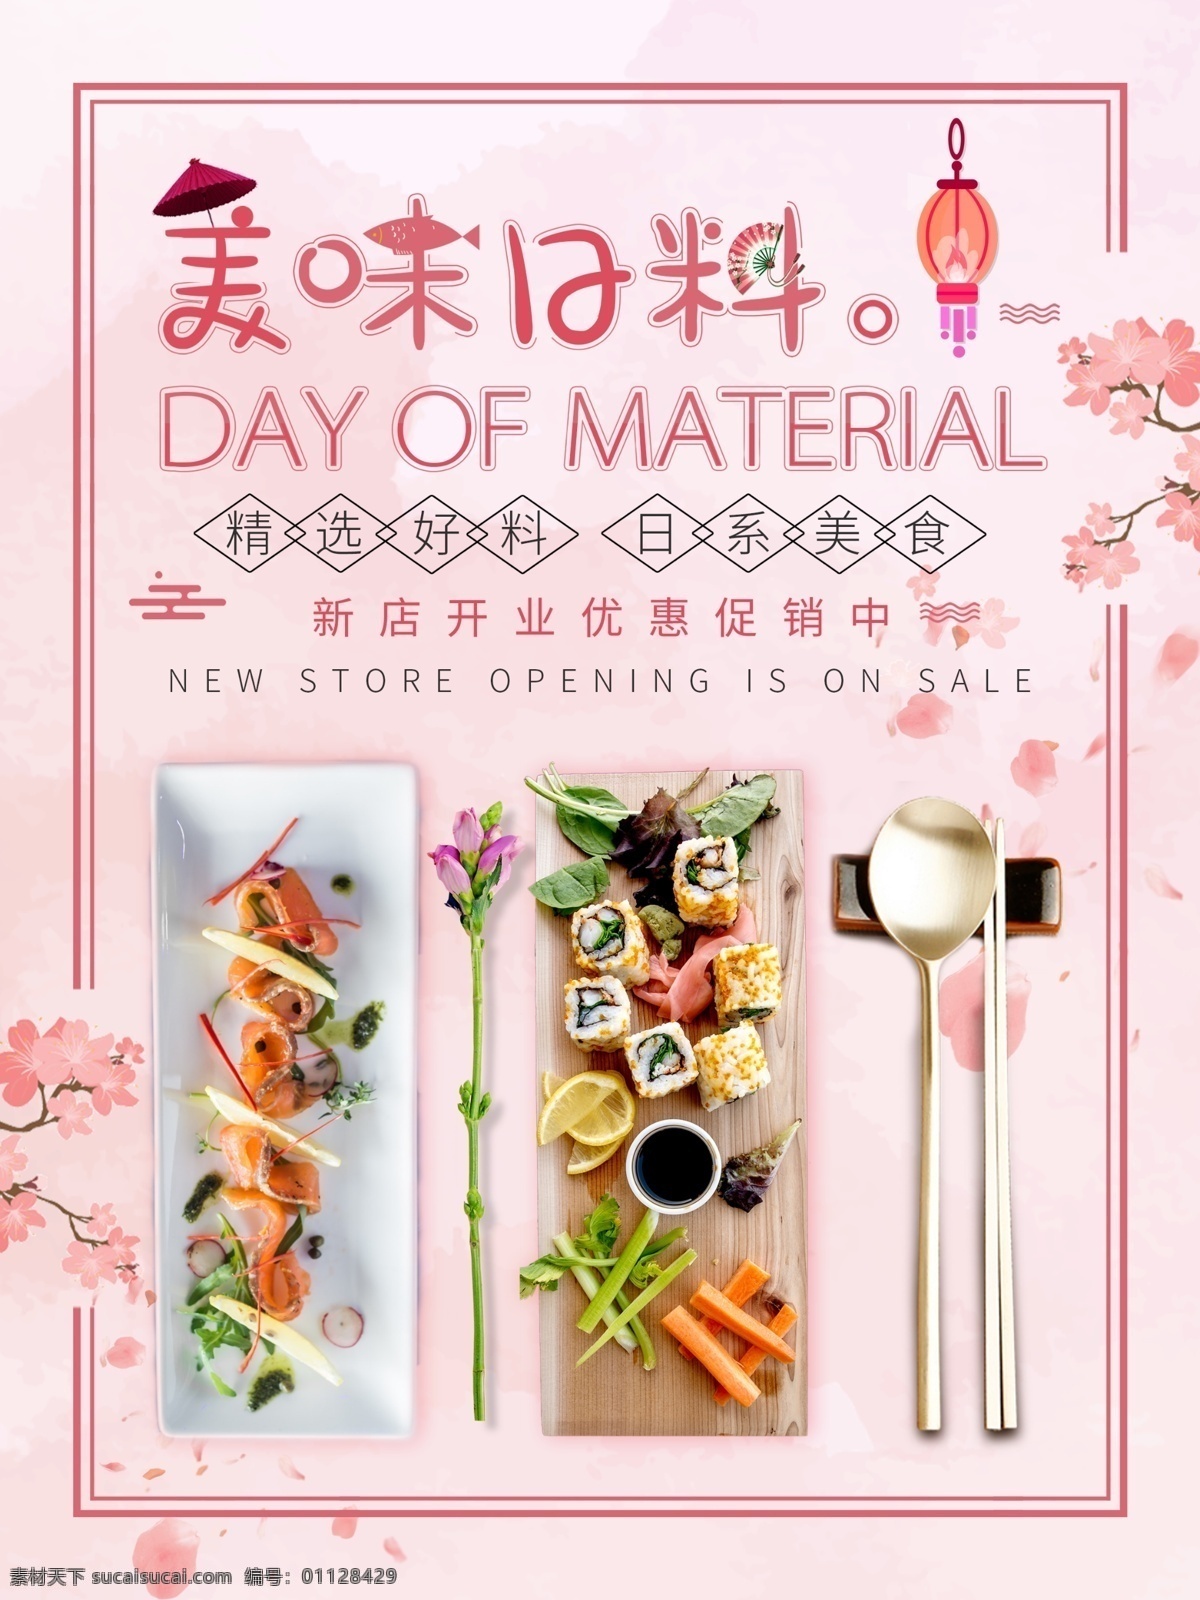 日本 美食 料理 寿司 日本料理 美食海报 促销海报 粉色海报 美食素材 日本美食 寿司海报 美味日料